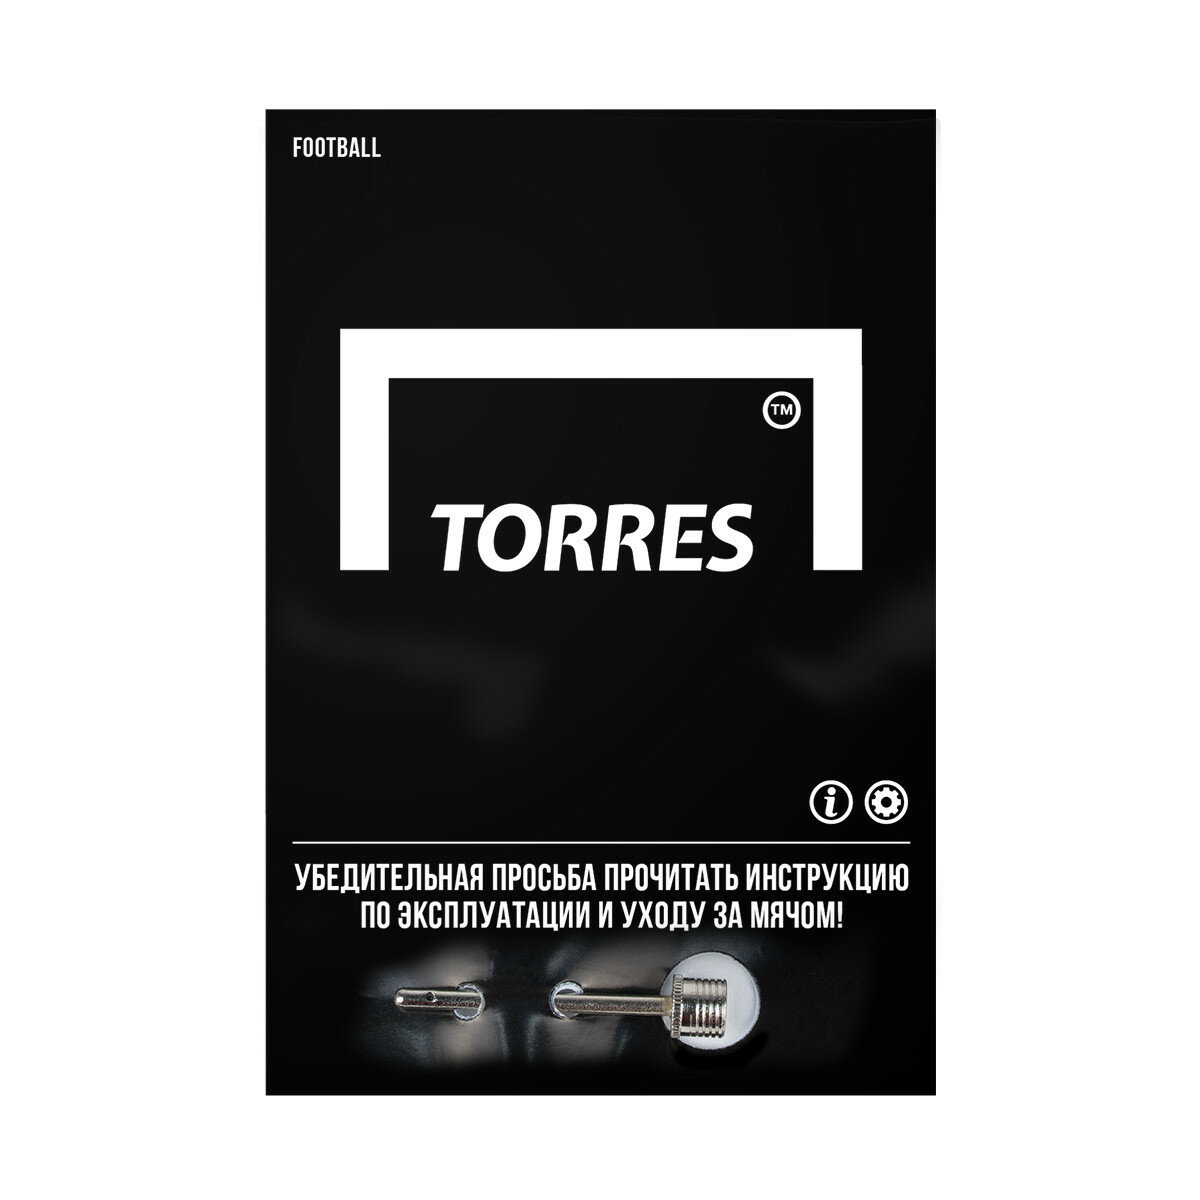 Мяч футбольный Torres Striker F321034, размер 4 (4)